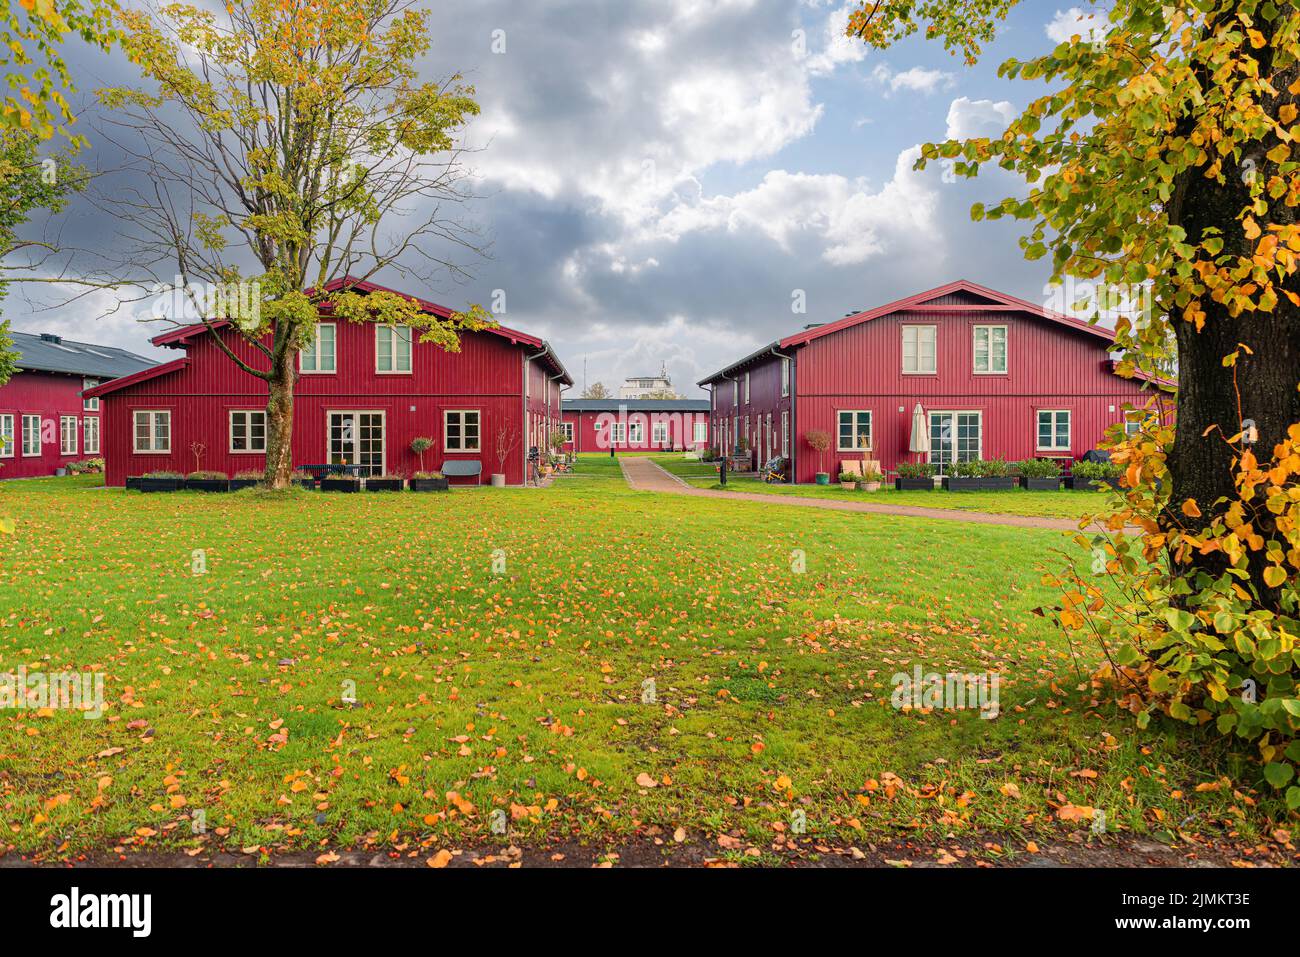 Mehrere identische rote Holzhäuser stehen auf einem Feld mit grünem Gras. Kopenhagen, Dänemark Stockfoto